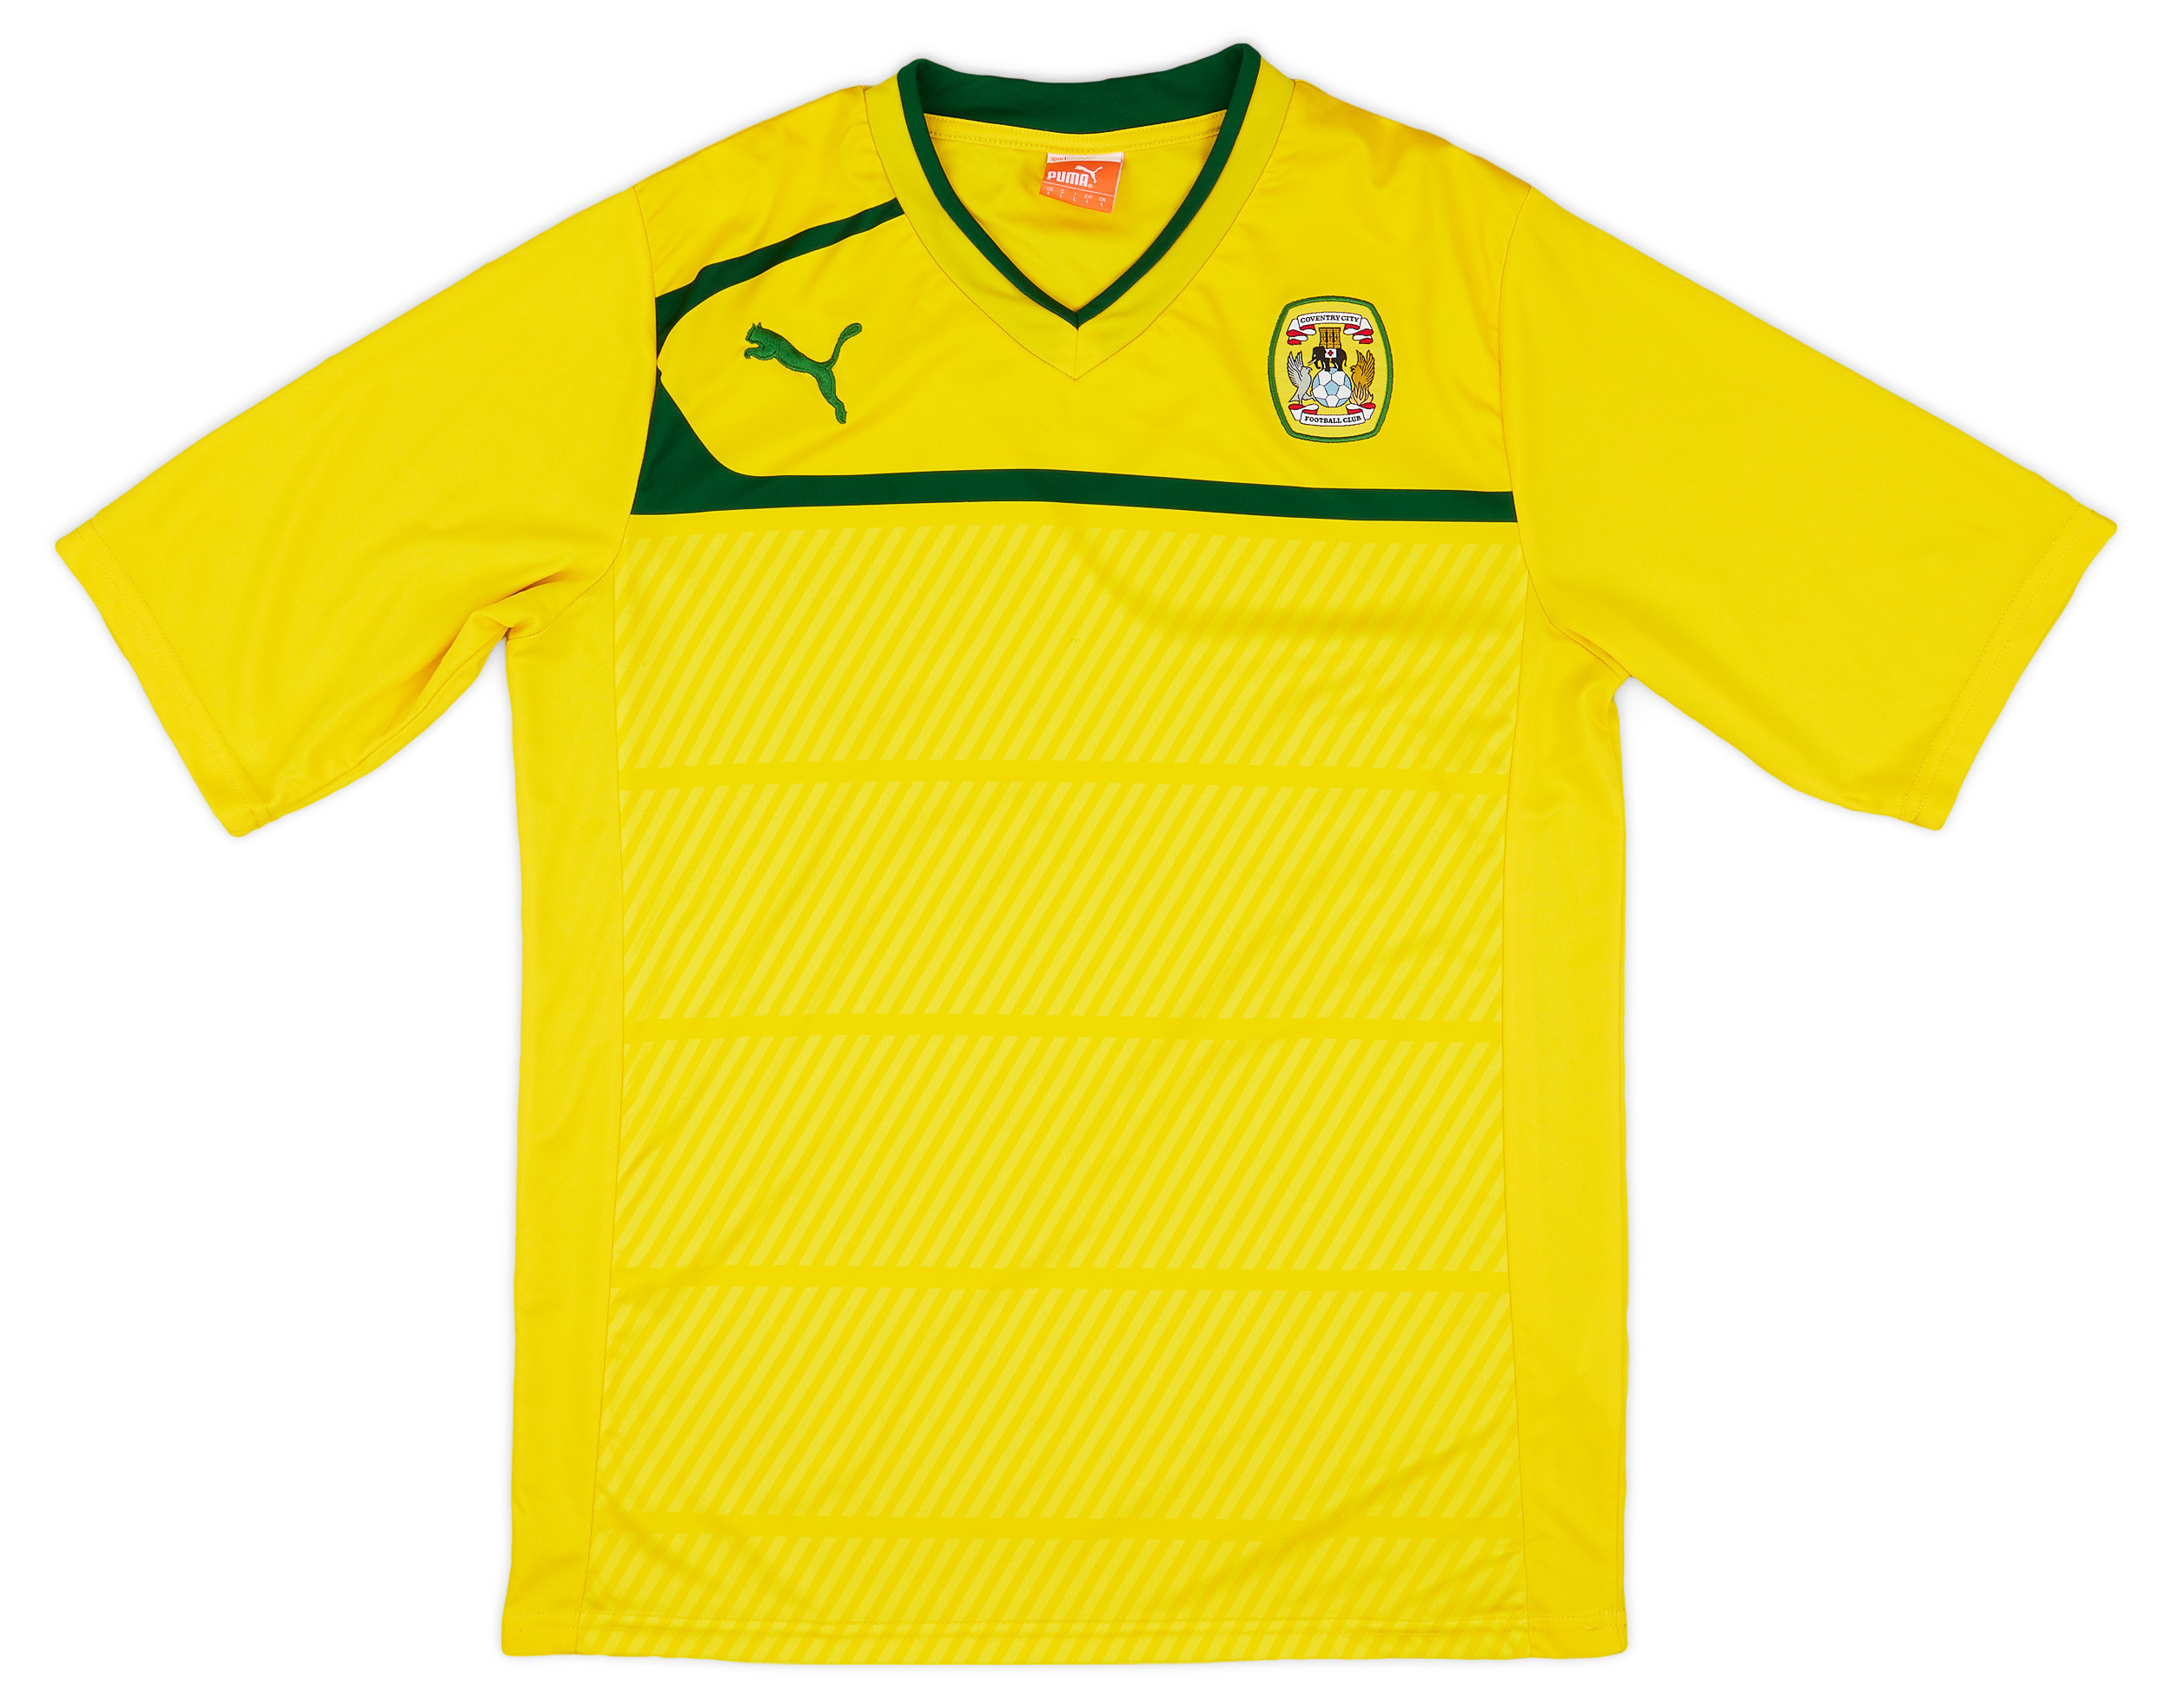 Coventry City  Fora camisa (Original)